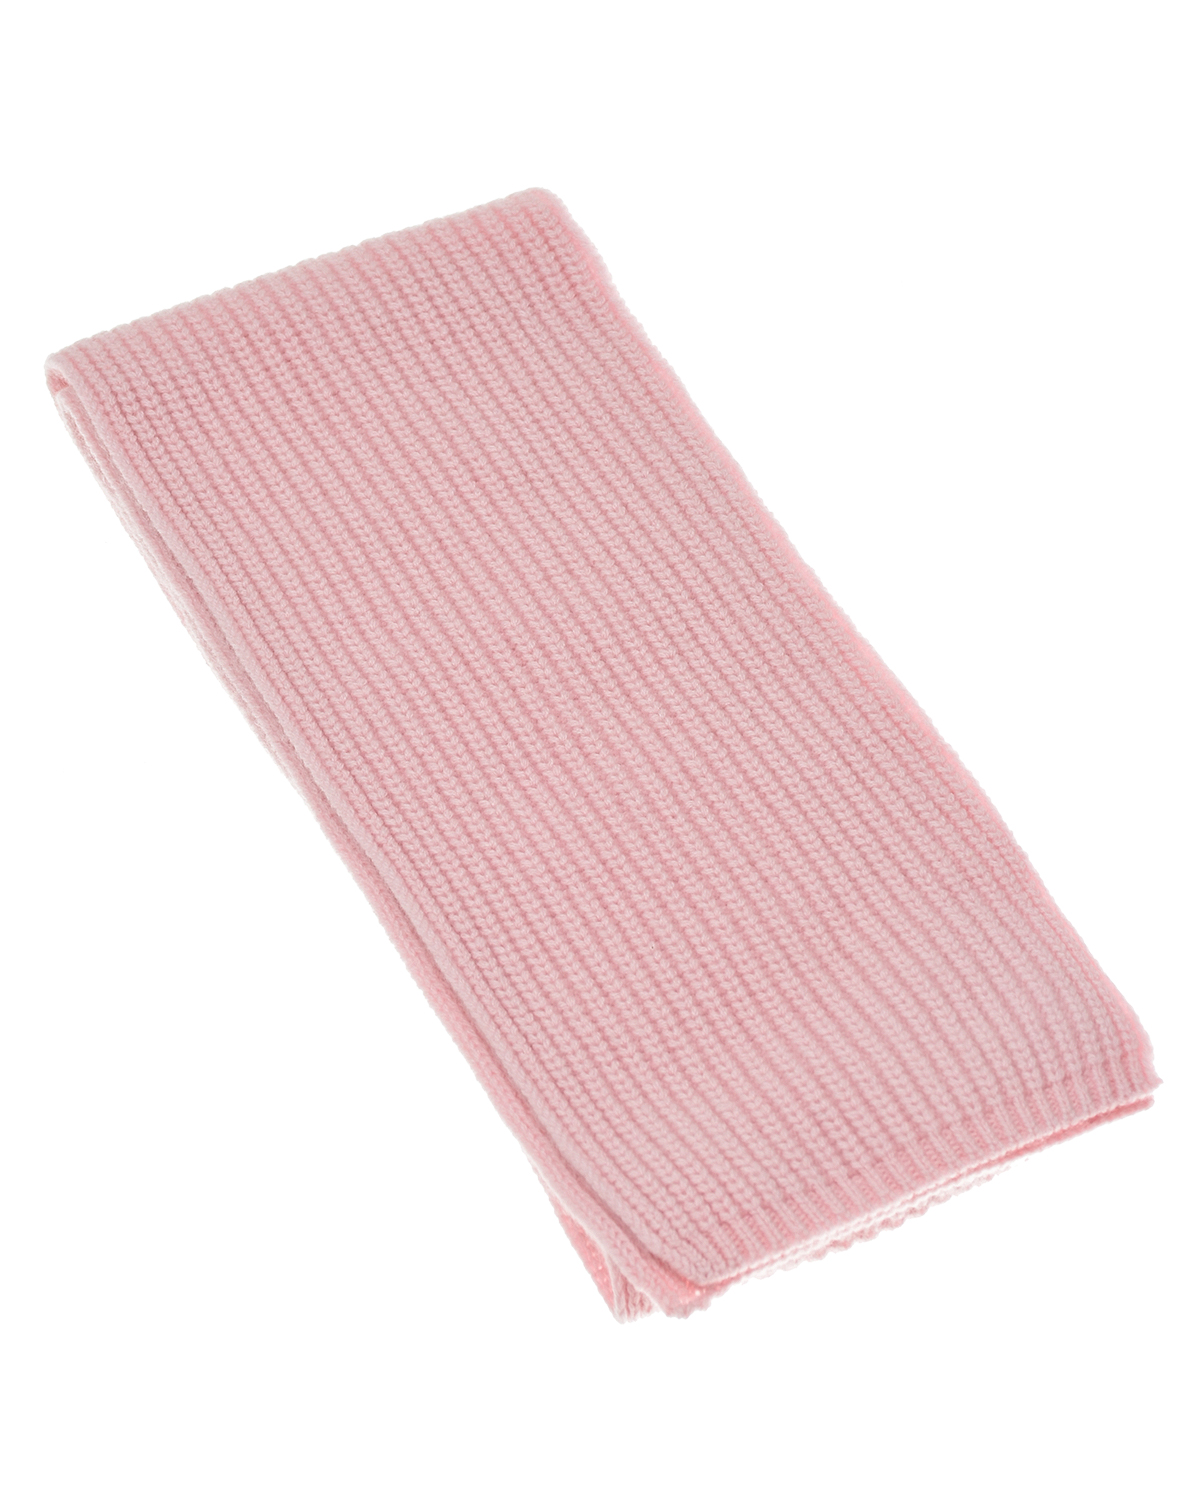 Розовый шарф из кашемира, 160x16 см Yves Salomon детский, размер unica